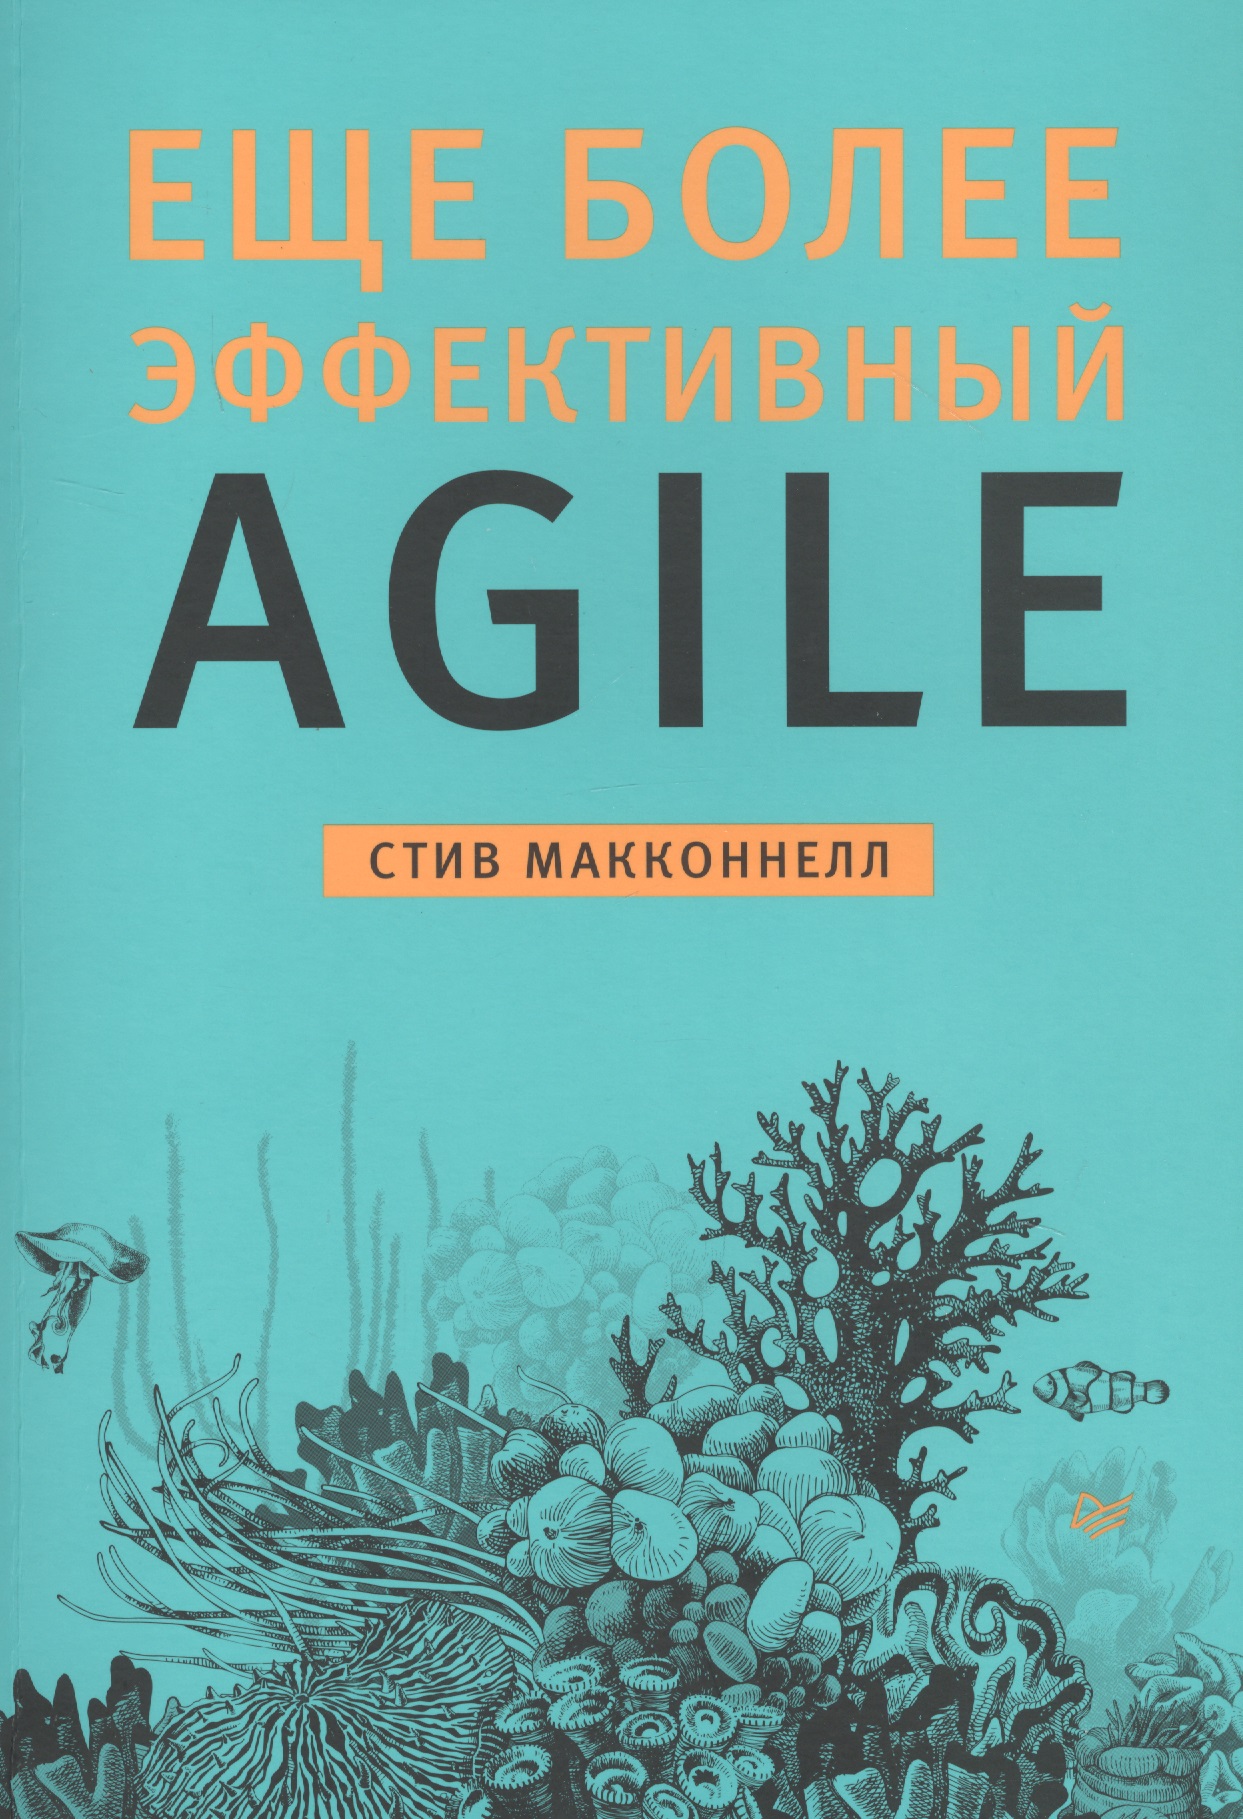 Макконнелл Стив Еще более эффективный Agile марк с лейтон просто об agile том 76 библиотека сбера